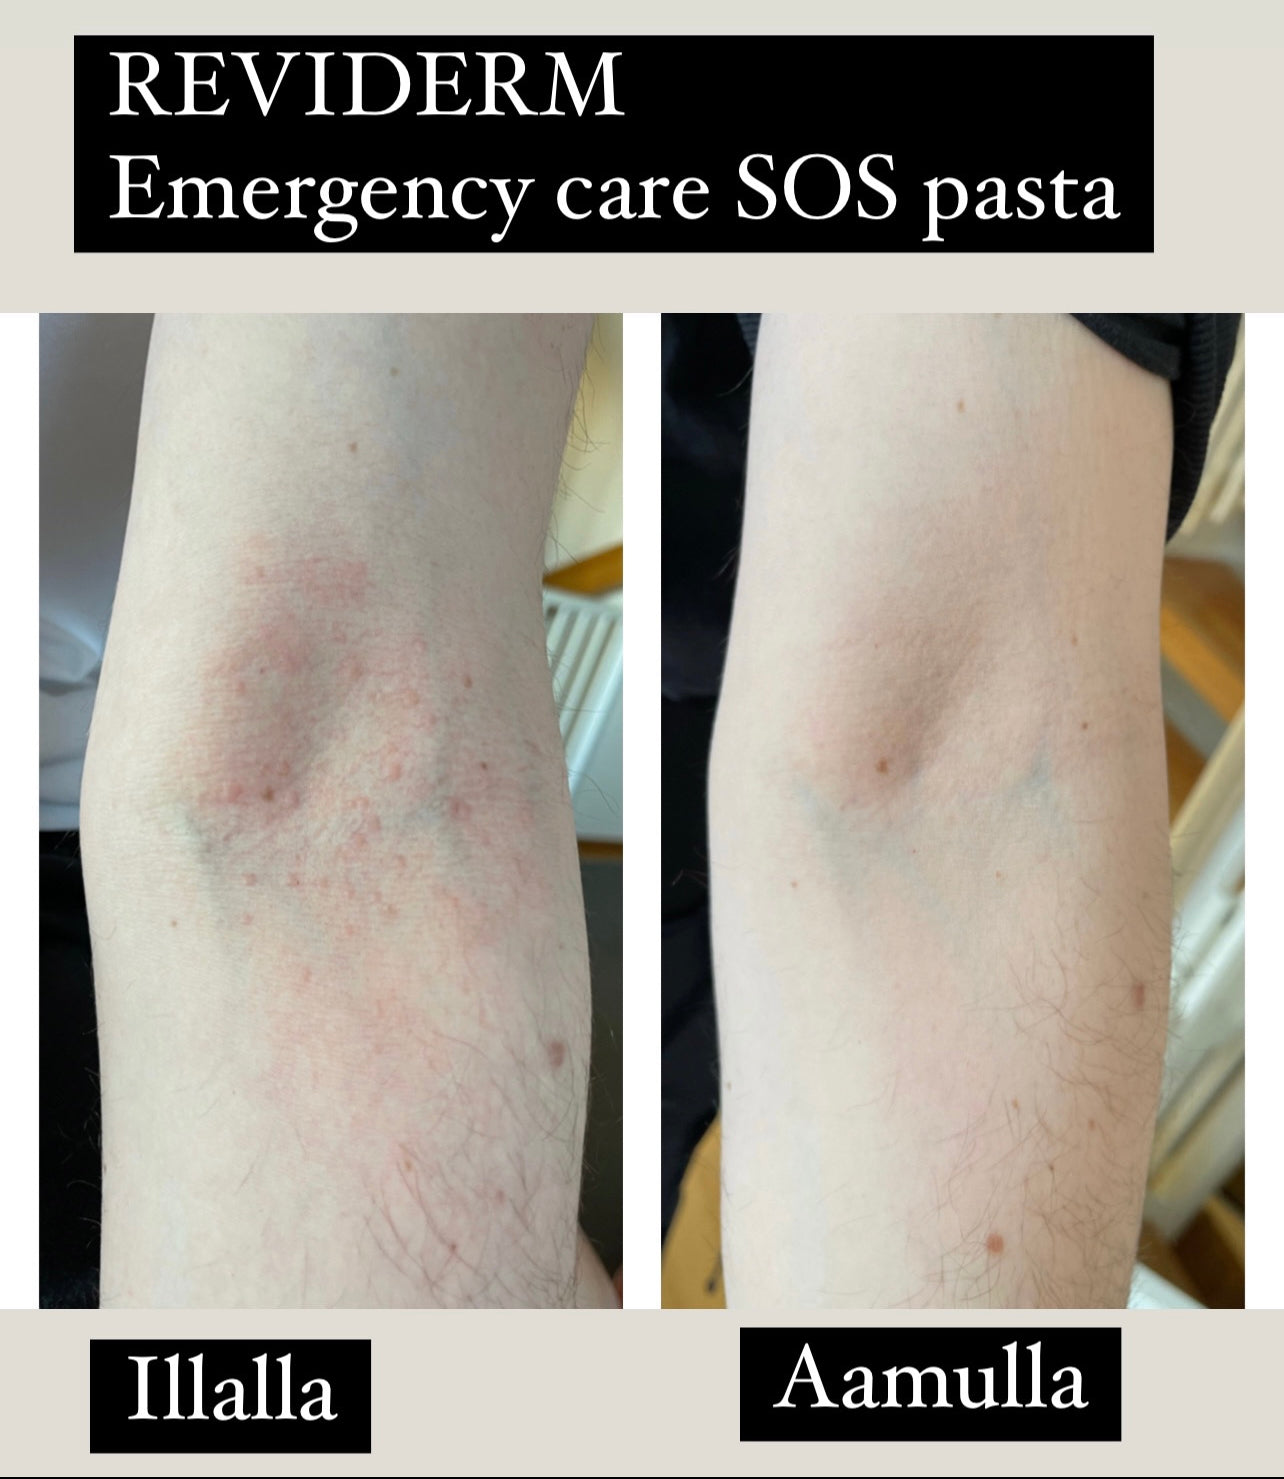 REVIDERM EMERGENCY CARE 10ml - SOS pasta akuuttiin ärsytykseen koko vartalolle ja kasvoille. Kortisoni